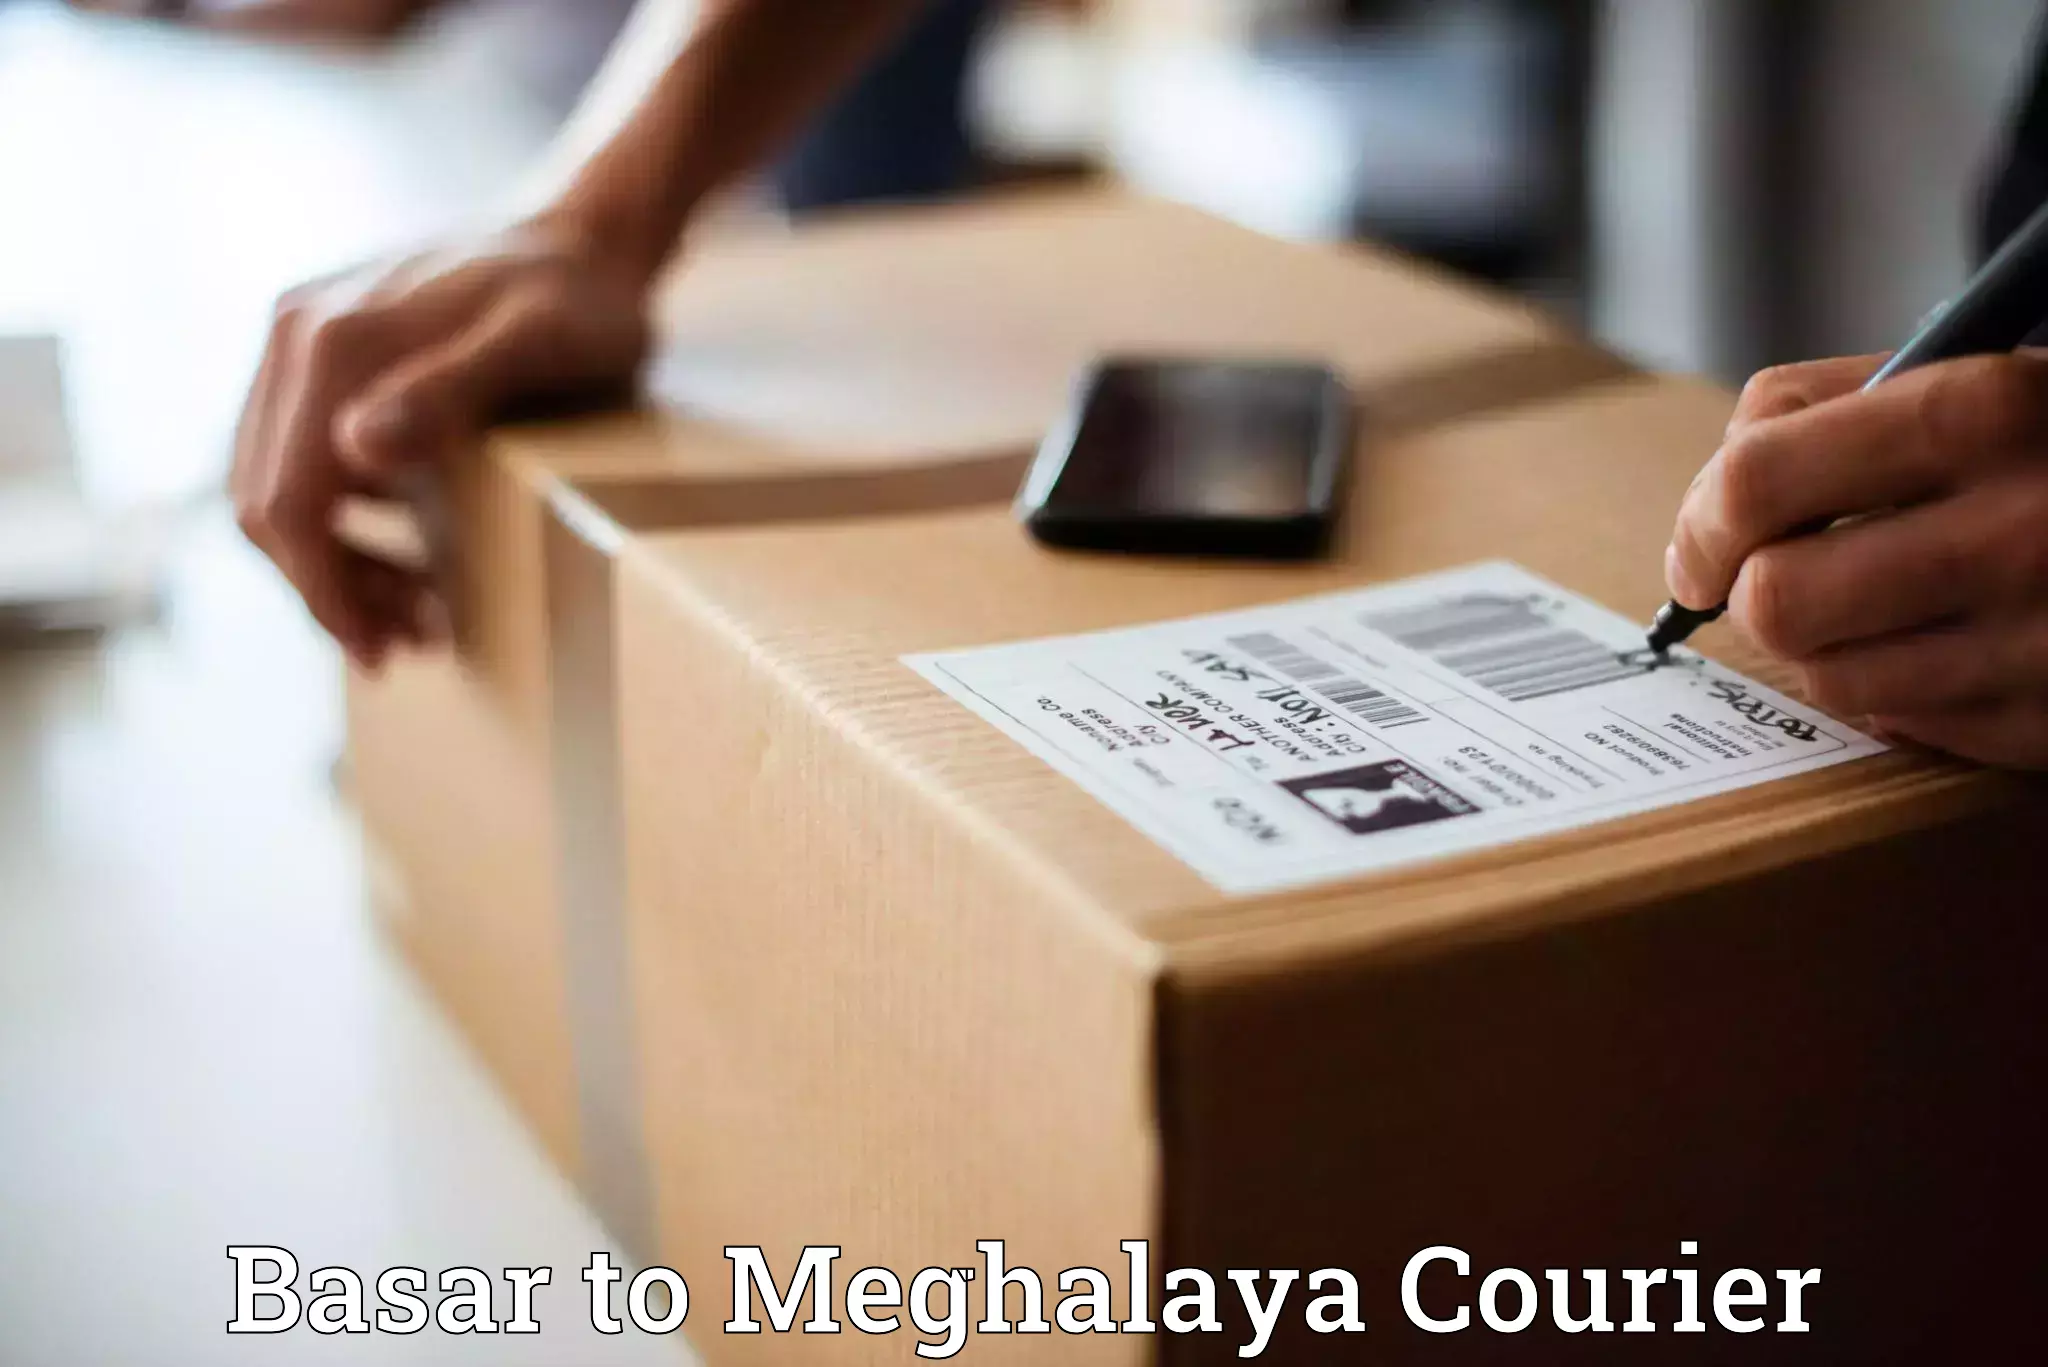 Express logistics Basar to Meghalaya